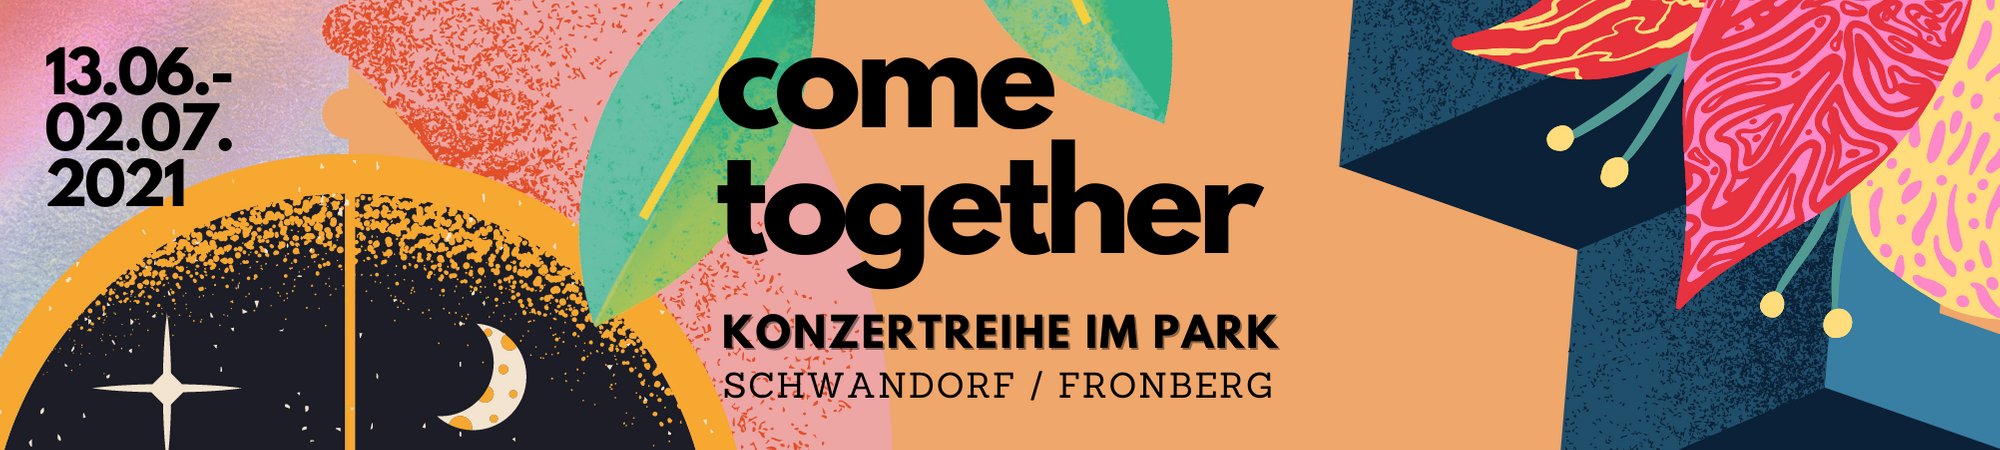 Bild vergrößern: Grafik: 
come together
Konzertreihe im Park
Schwandorf/ Fronberg
13. Juni bis 04. Juli 2021